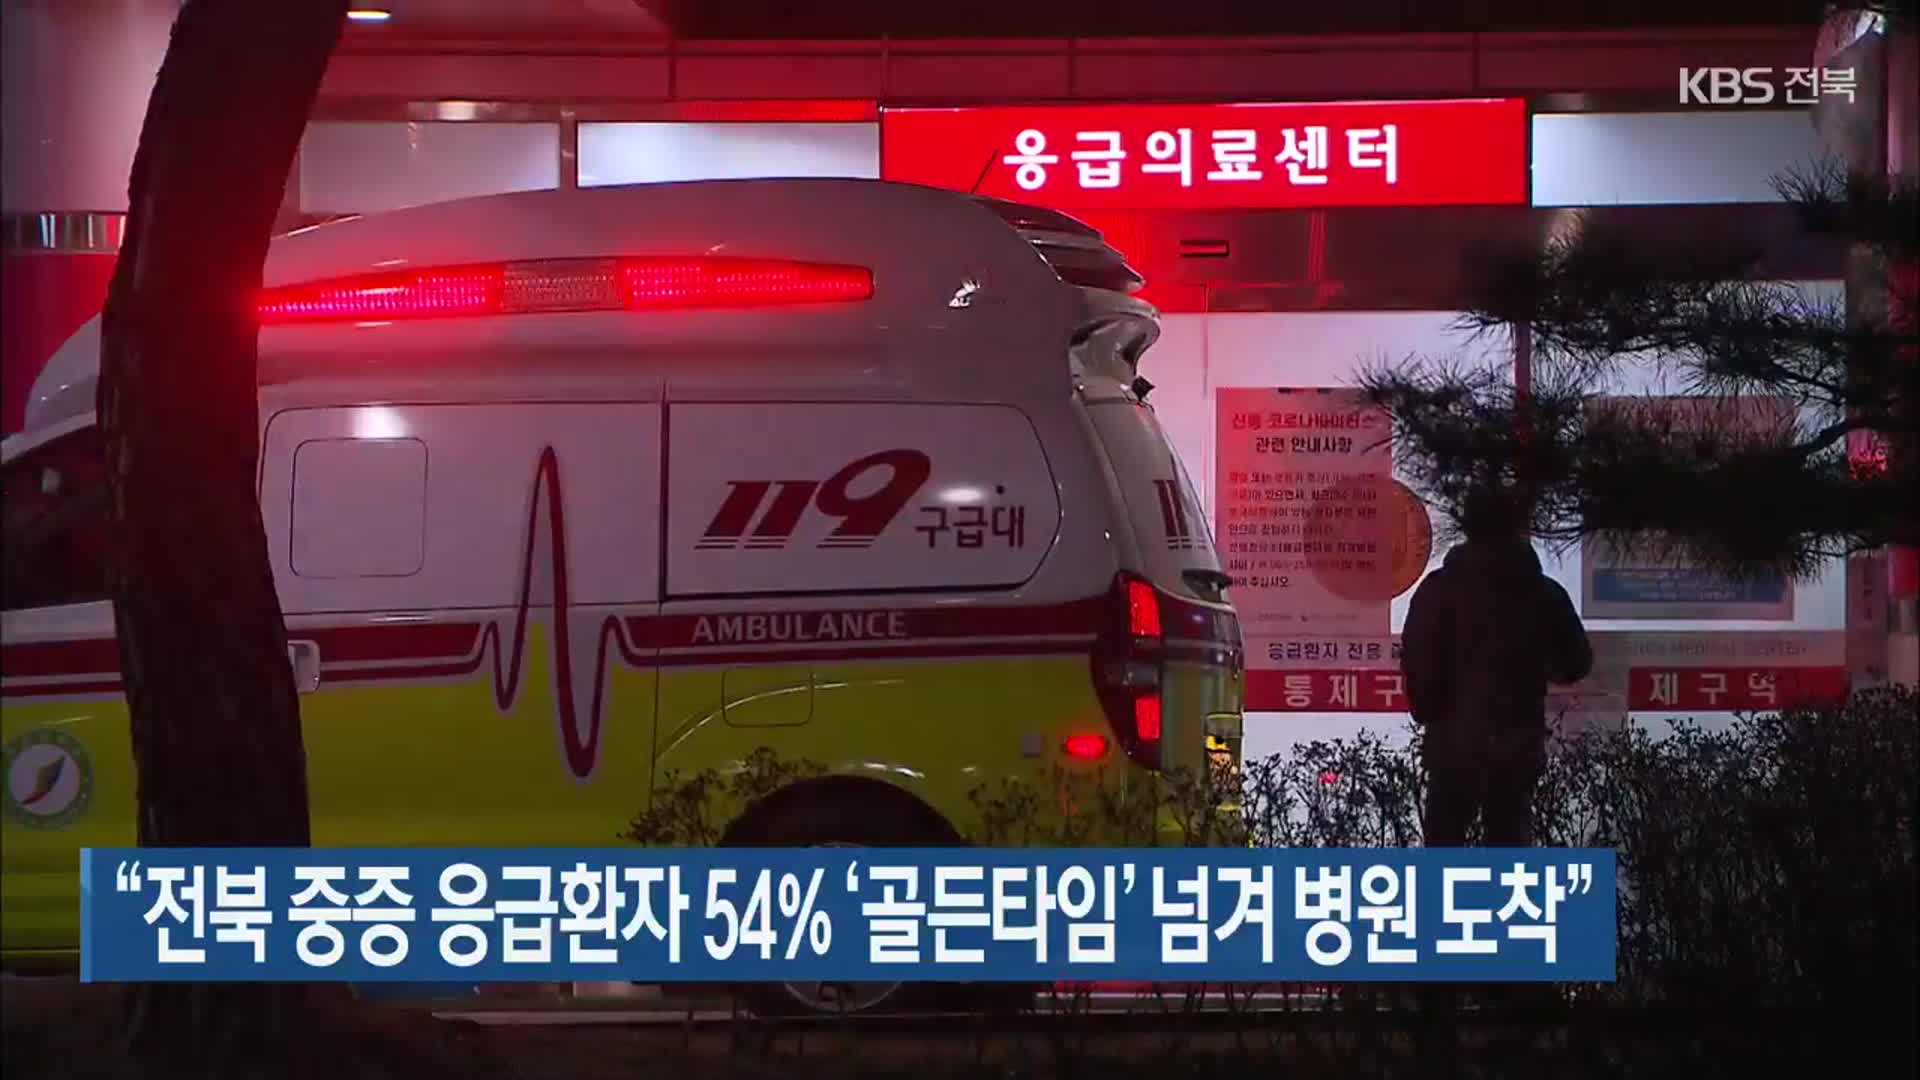 “전북 중증 응급환자 54% ‘골든타임’ 넘겨 병원 도착”